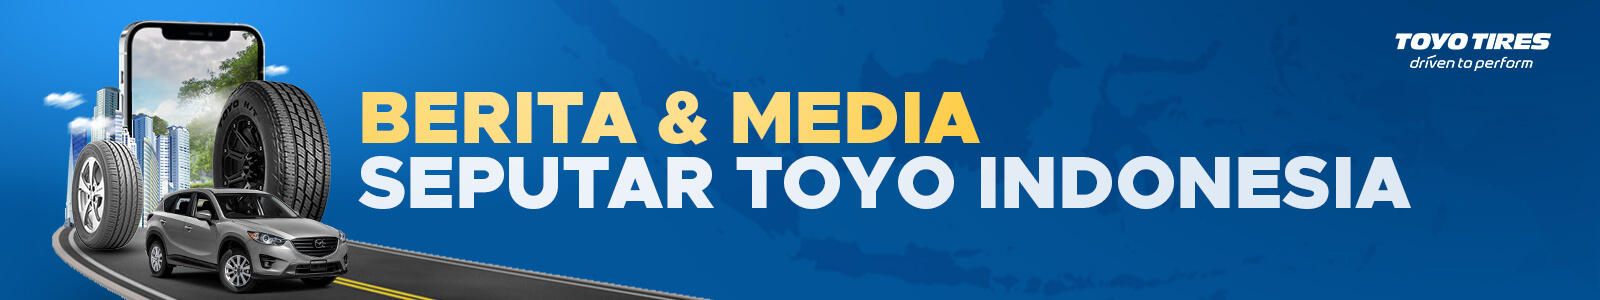 Berita Dan Media Toyo Tires Indonesia